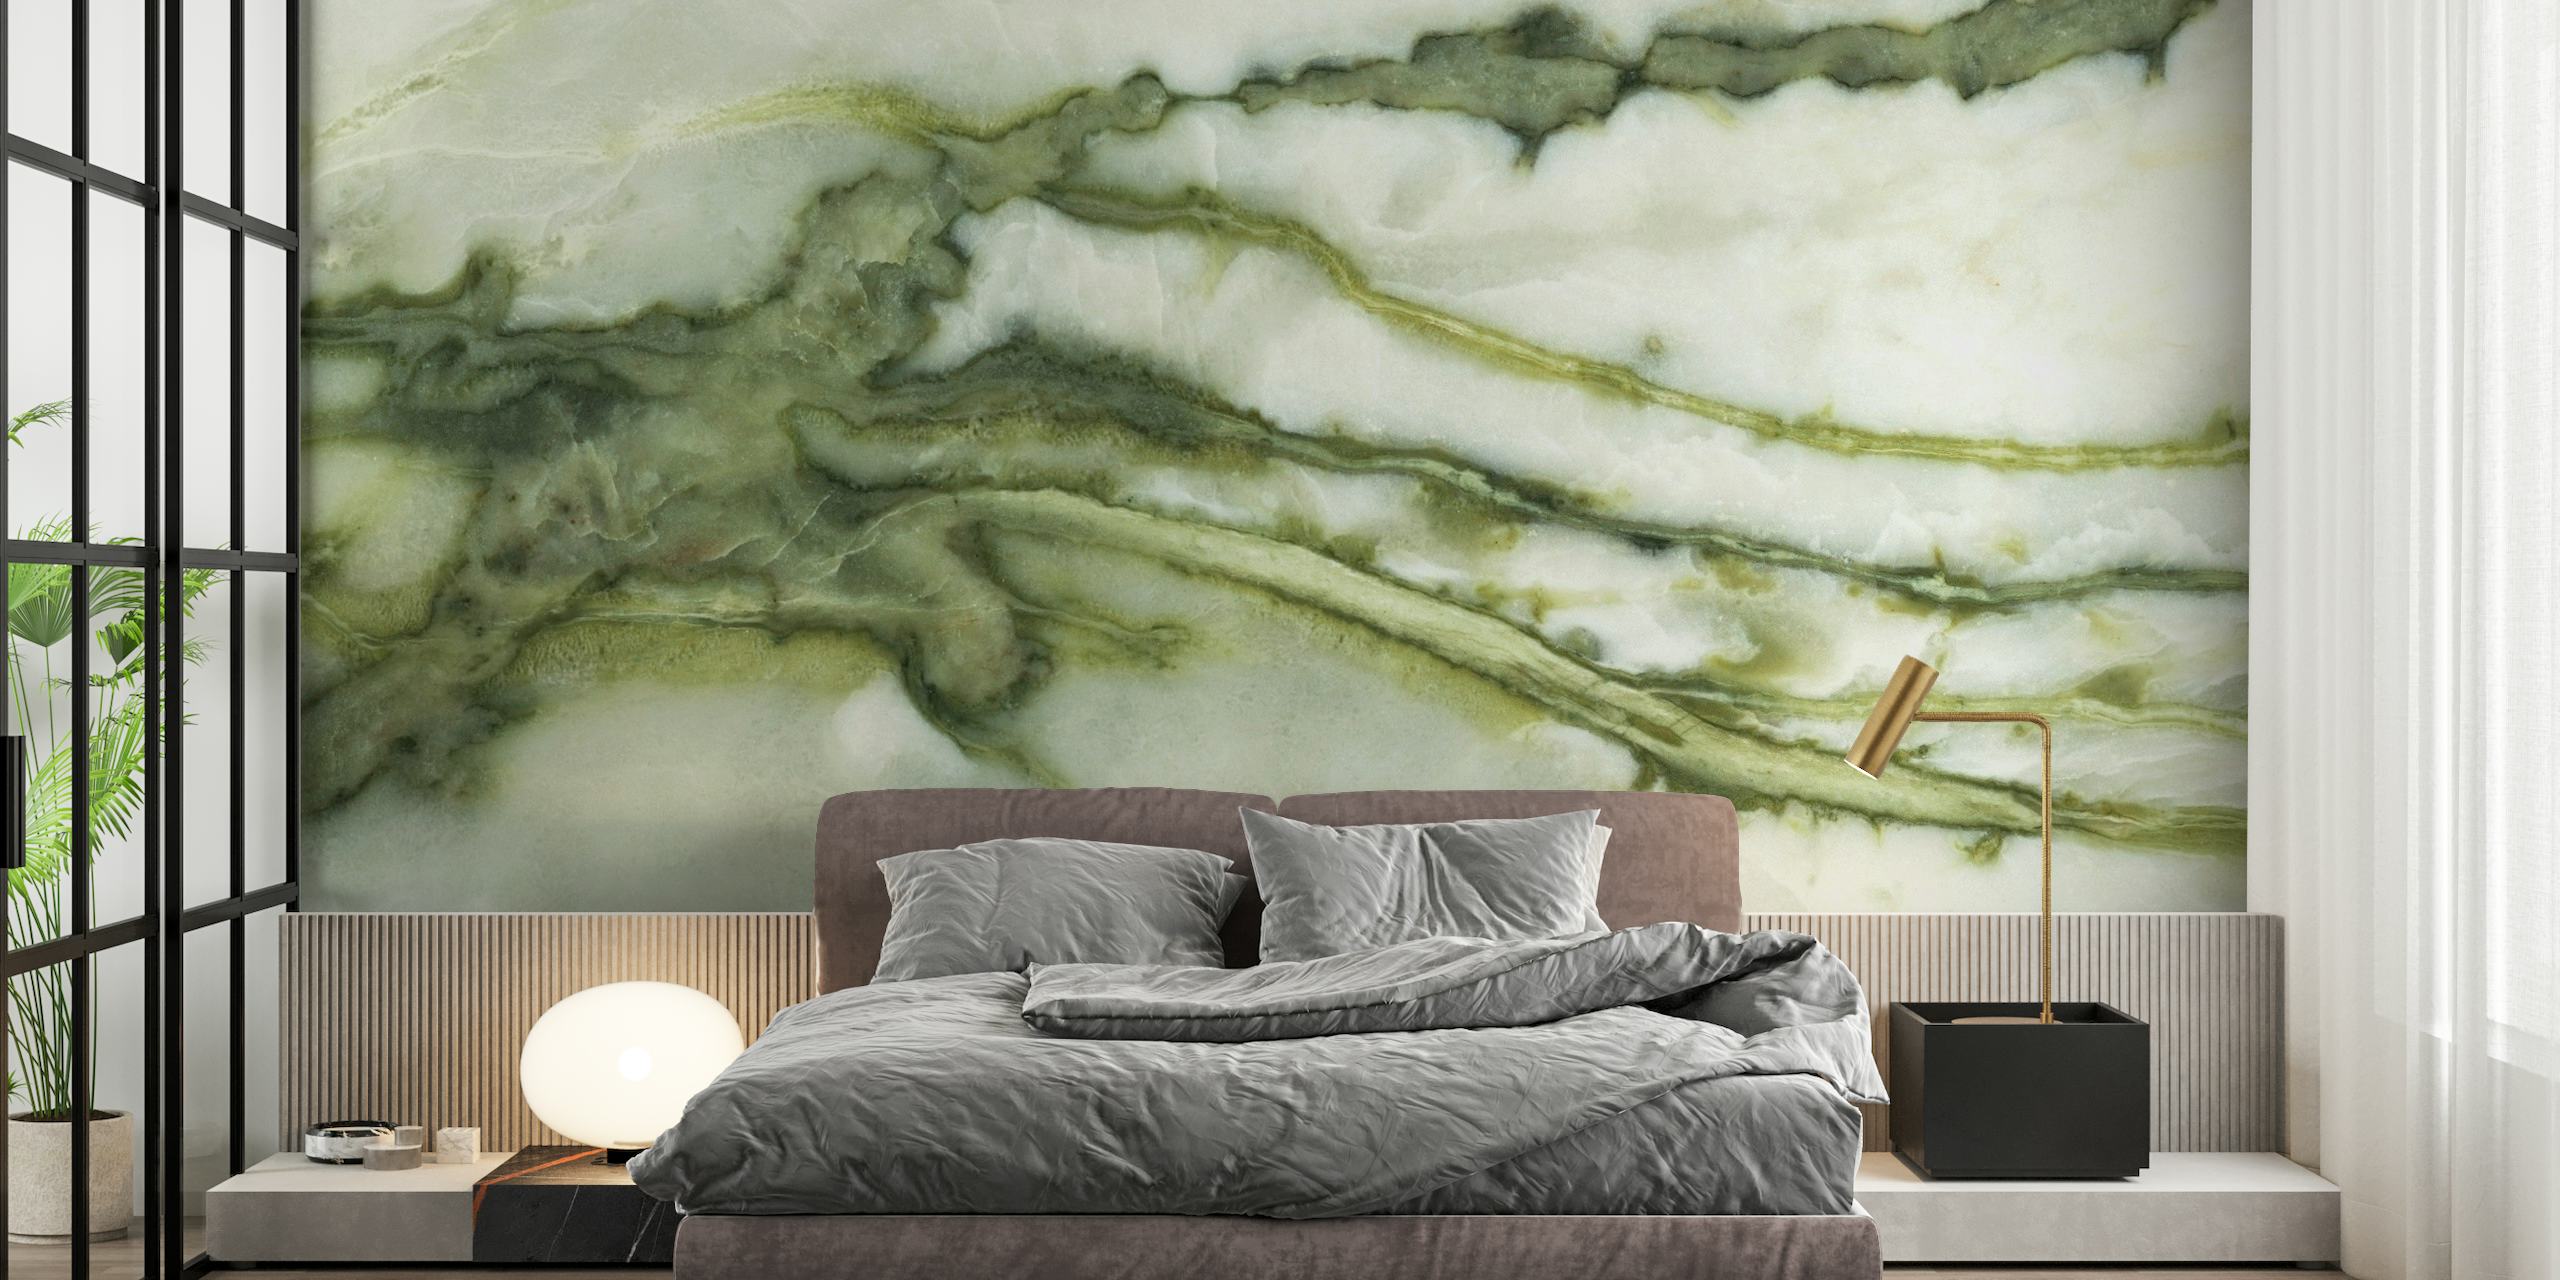 Green Natural Stone Wall Beautiful Wallpaper papel pintado